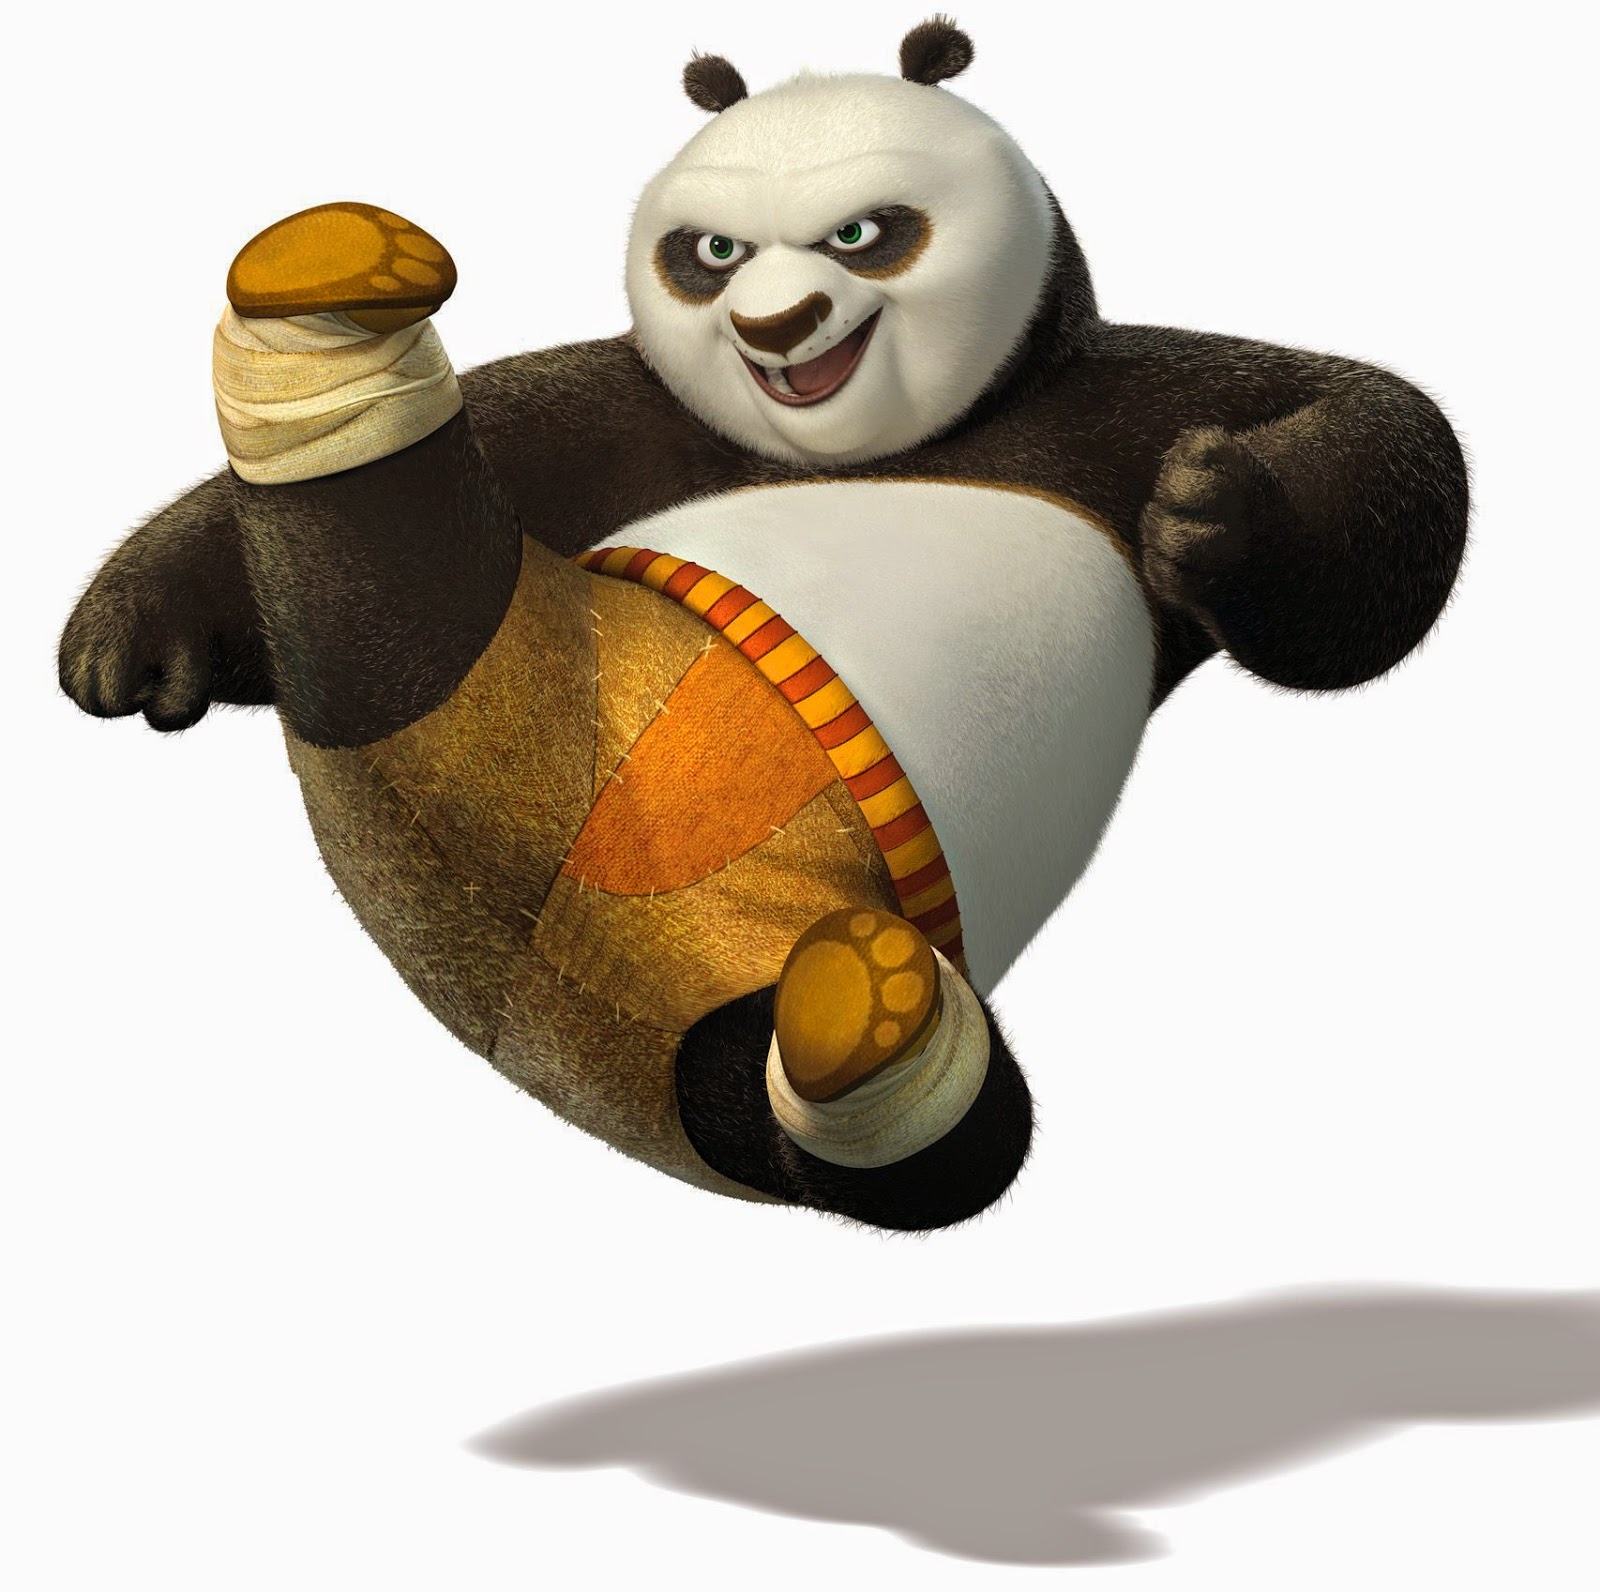 Kumpulan Gambar  Kung Fu  Panda  Gambar  Lucu Terbaru 